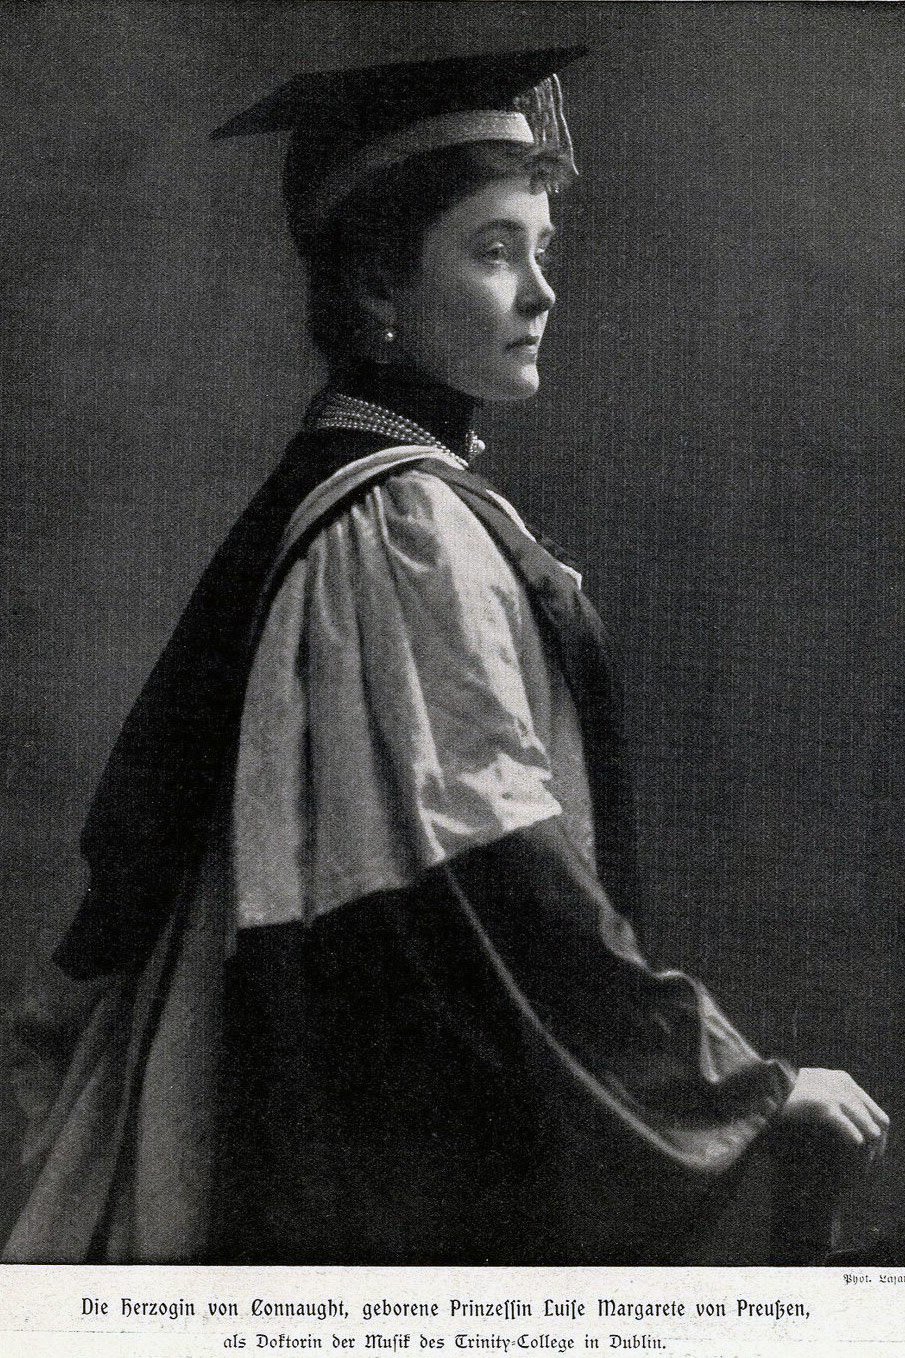 Duchess of Connaught - Luise Margarete von Preußen, preußische Prinzessin